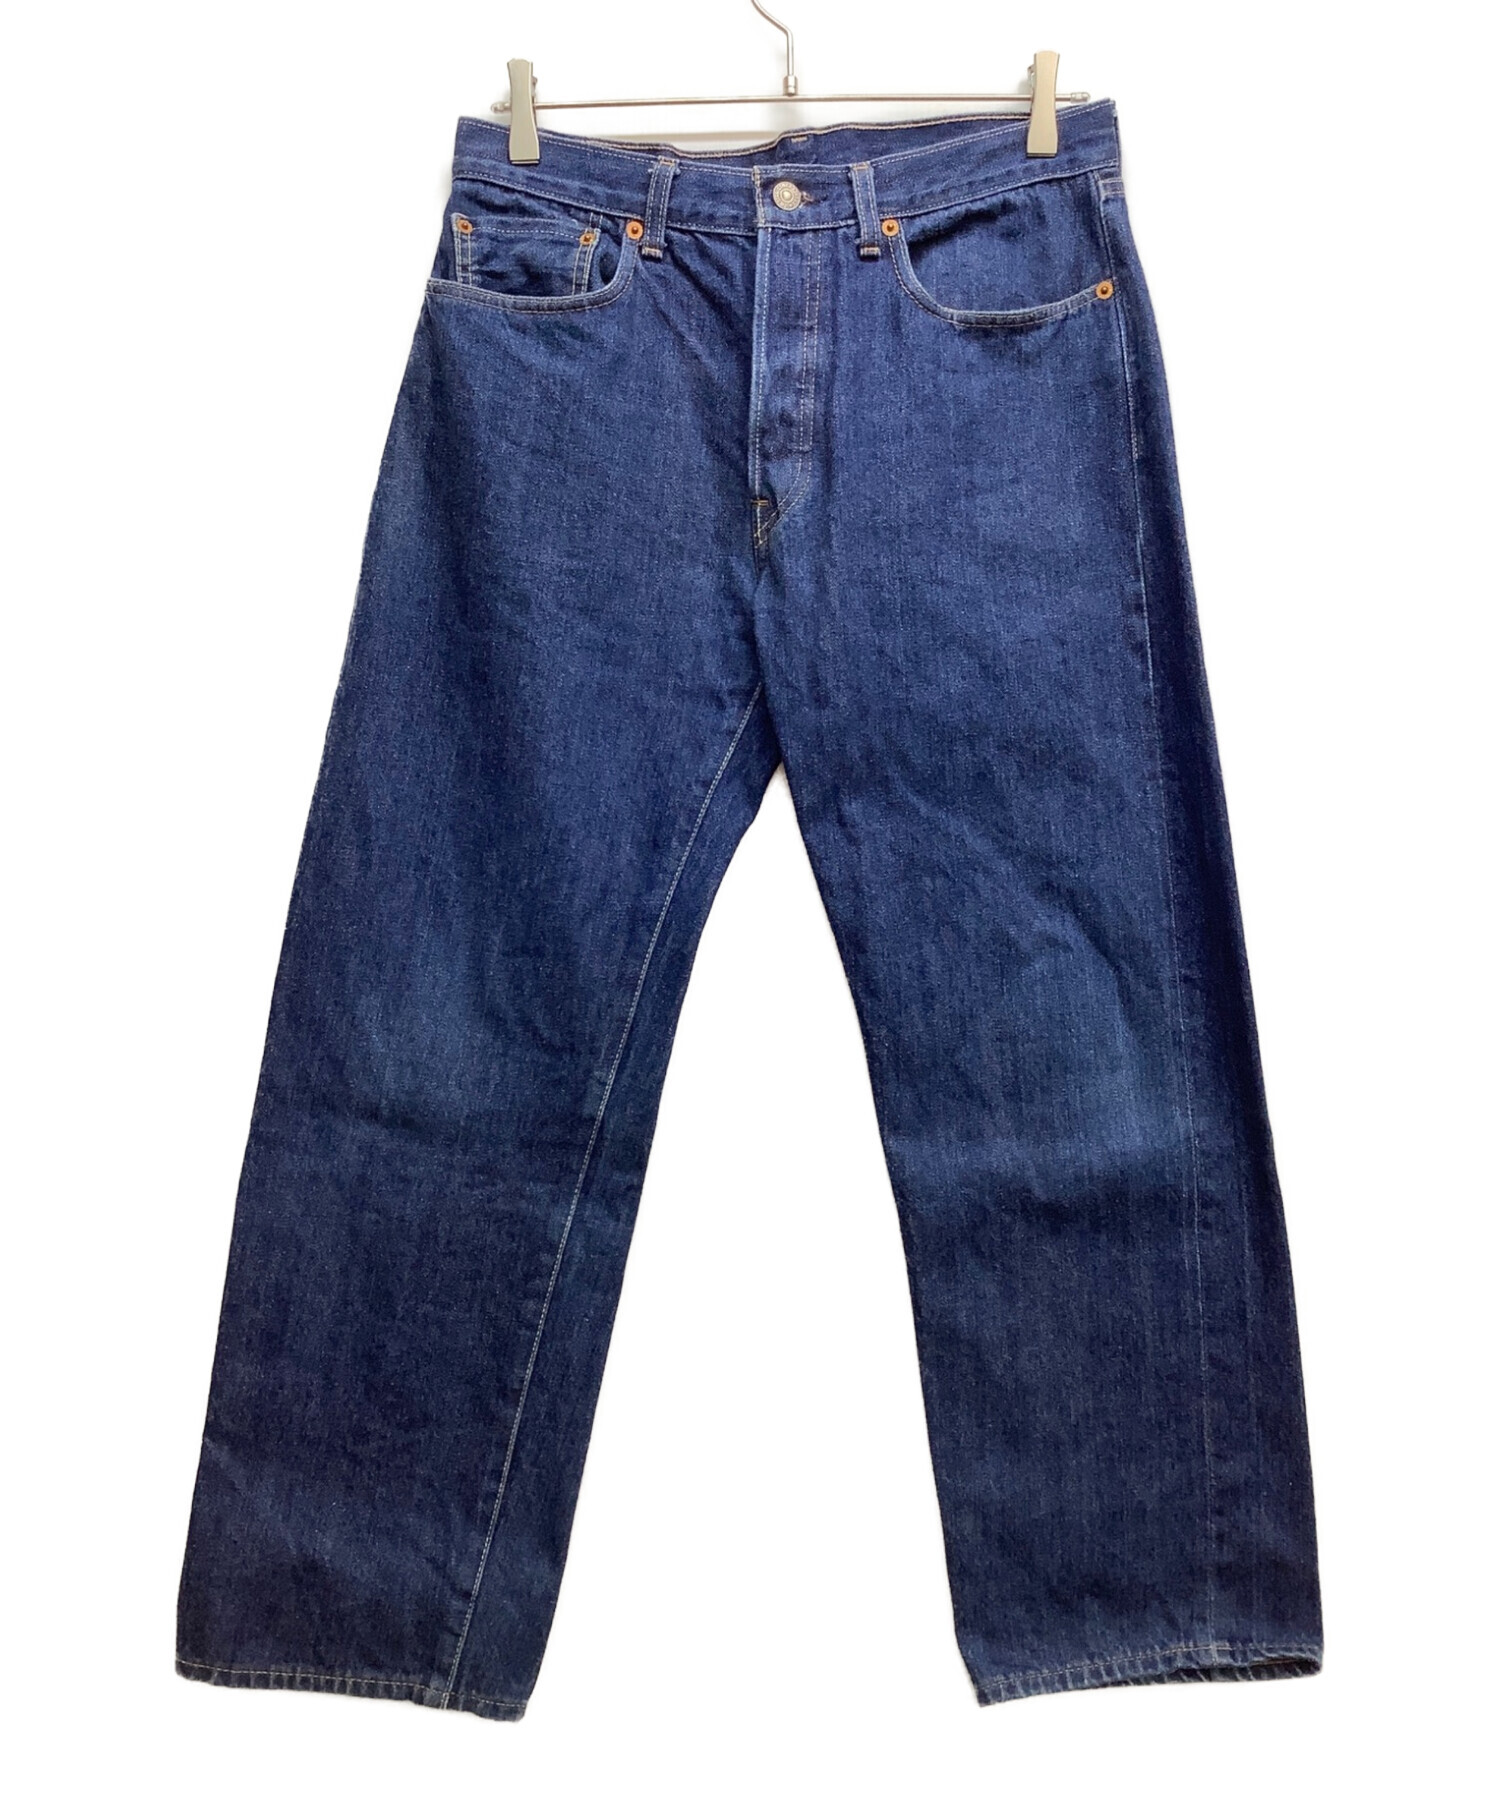 LEVI'S VINTAGE CLOTHING (リーバイス ビンテージ クロージング) リジッドデニムパンツ インディゴ サイズ:W34×L34